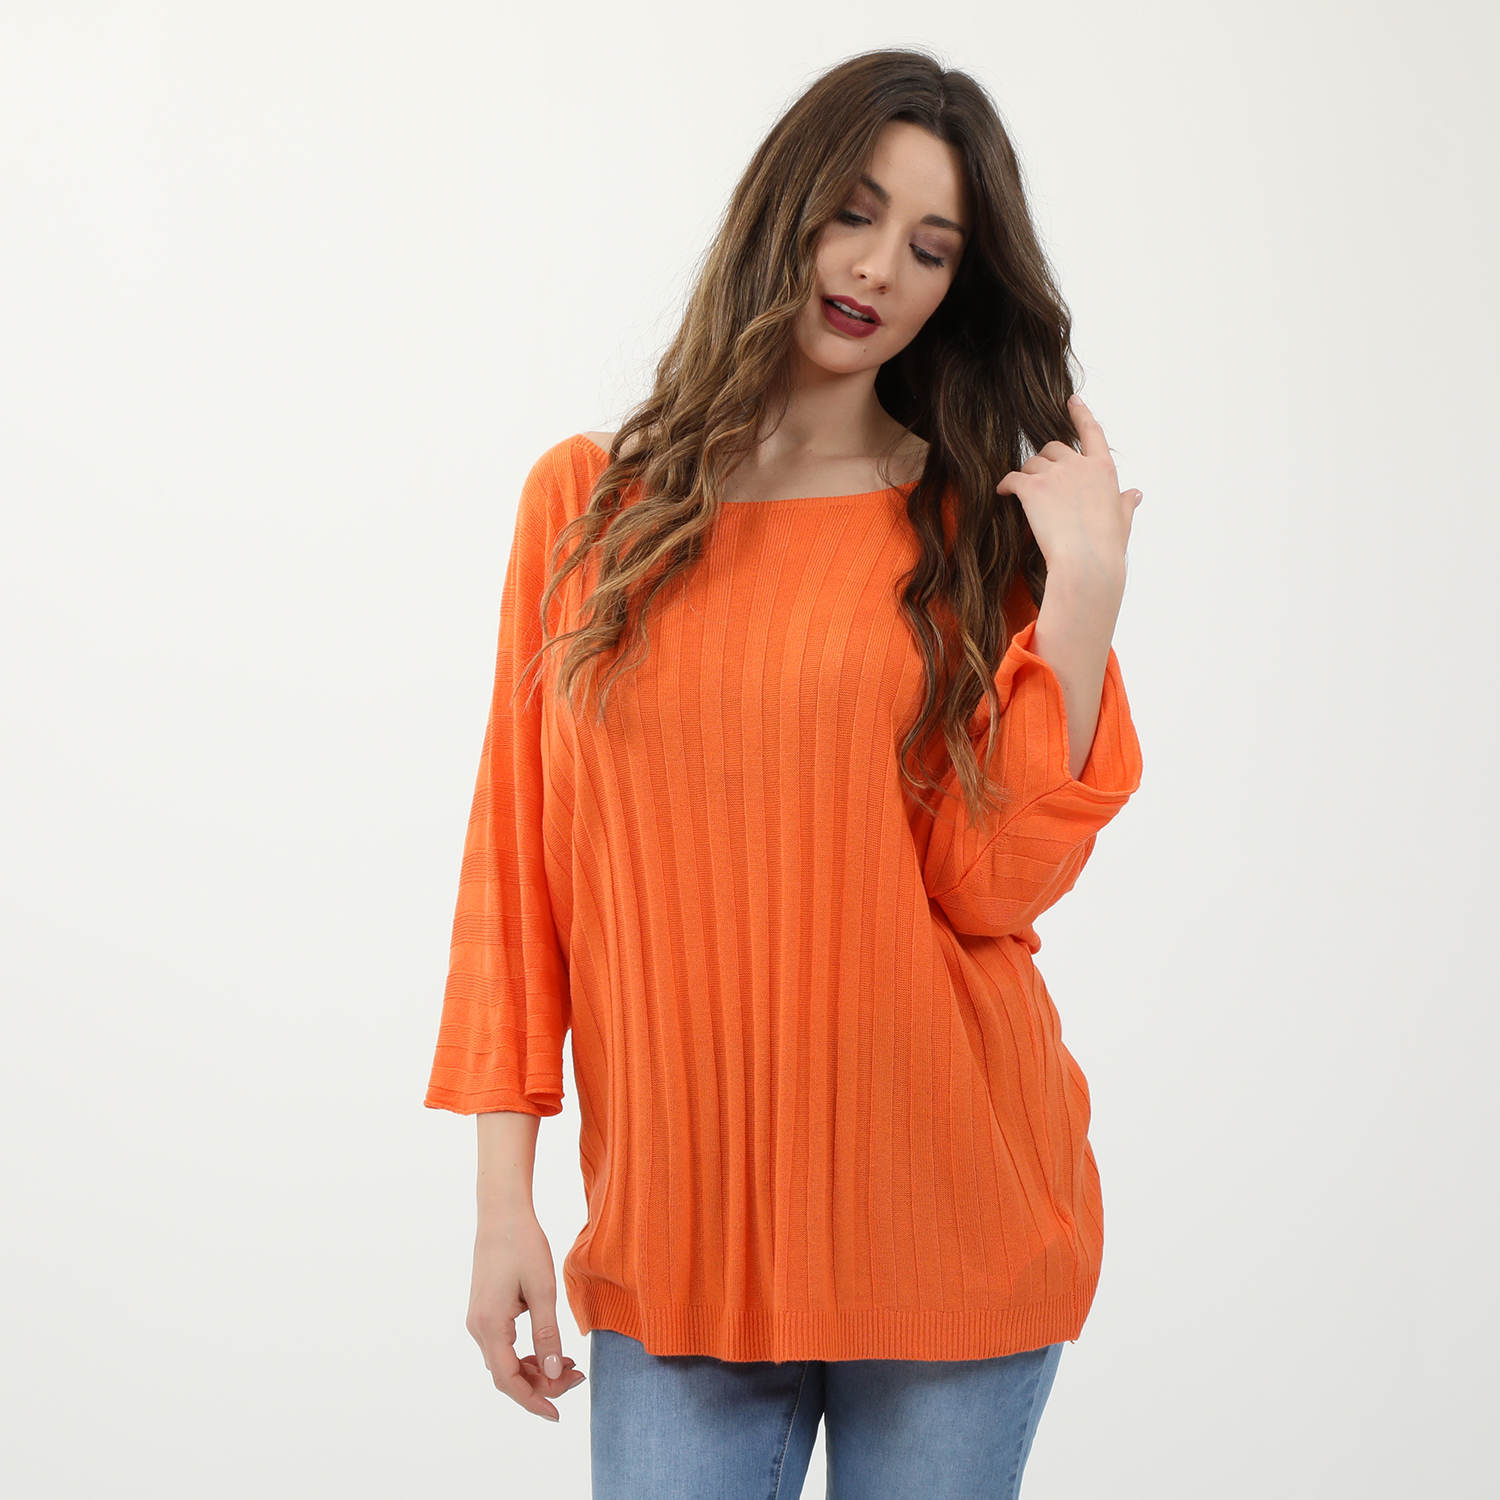 Γυναικεία/Ρούχα/Μπλούζες/Μακρυμάνικες ATTRATTIVO - Γυναικείο ελαφρύ πλεκτό ATTRATTIVO πορτοκαλί